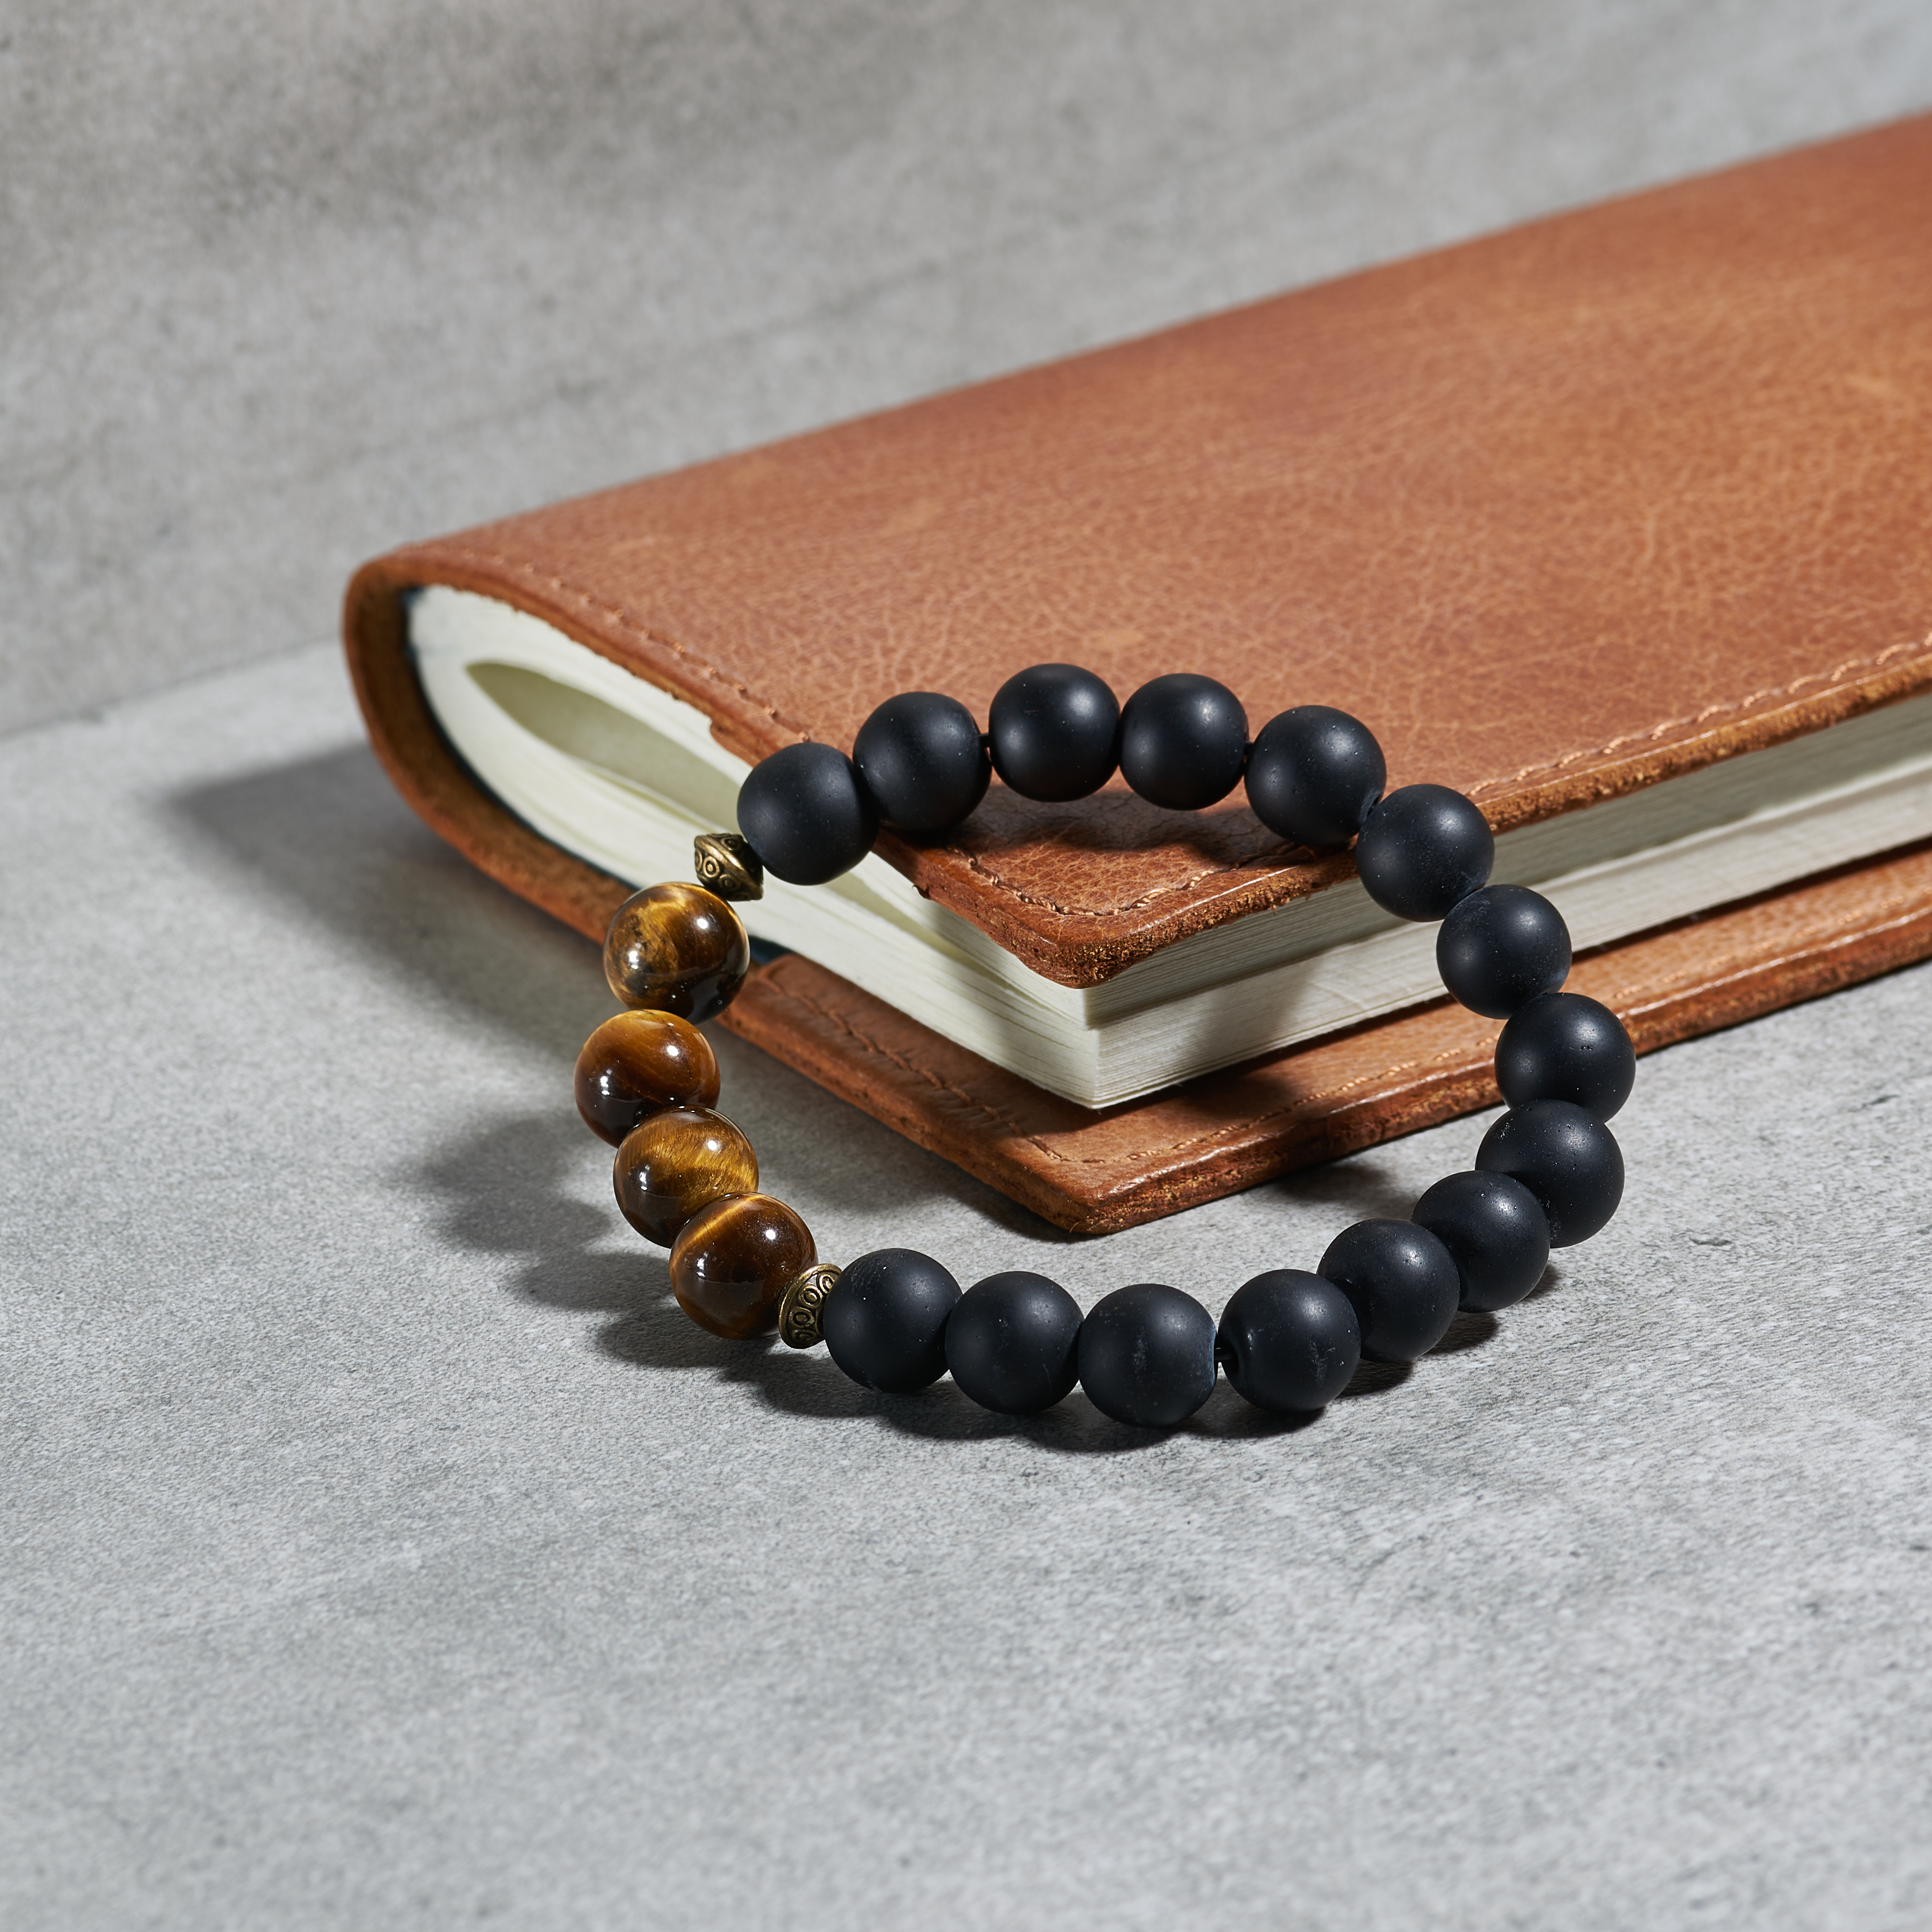 Le bracelet en perles : Un accessoire tendance incontournable pour les hommes modernes et stylés